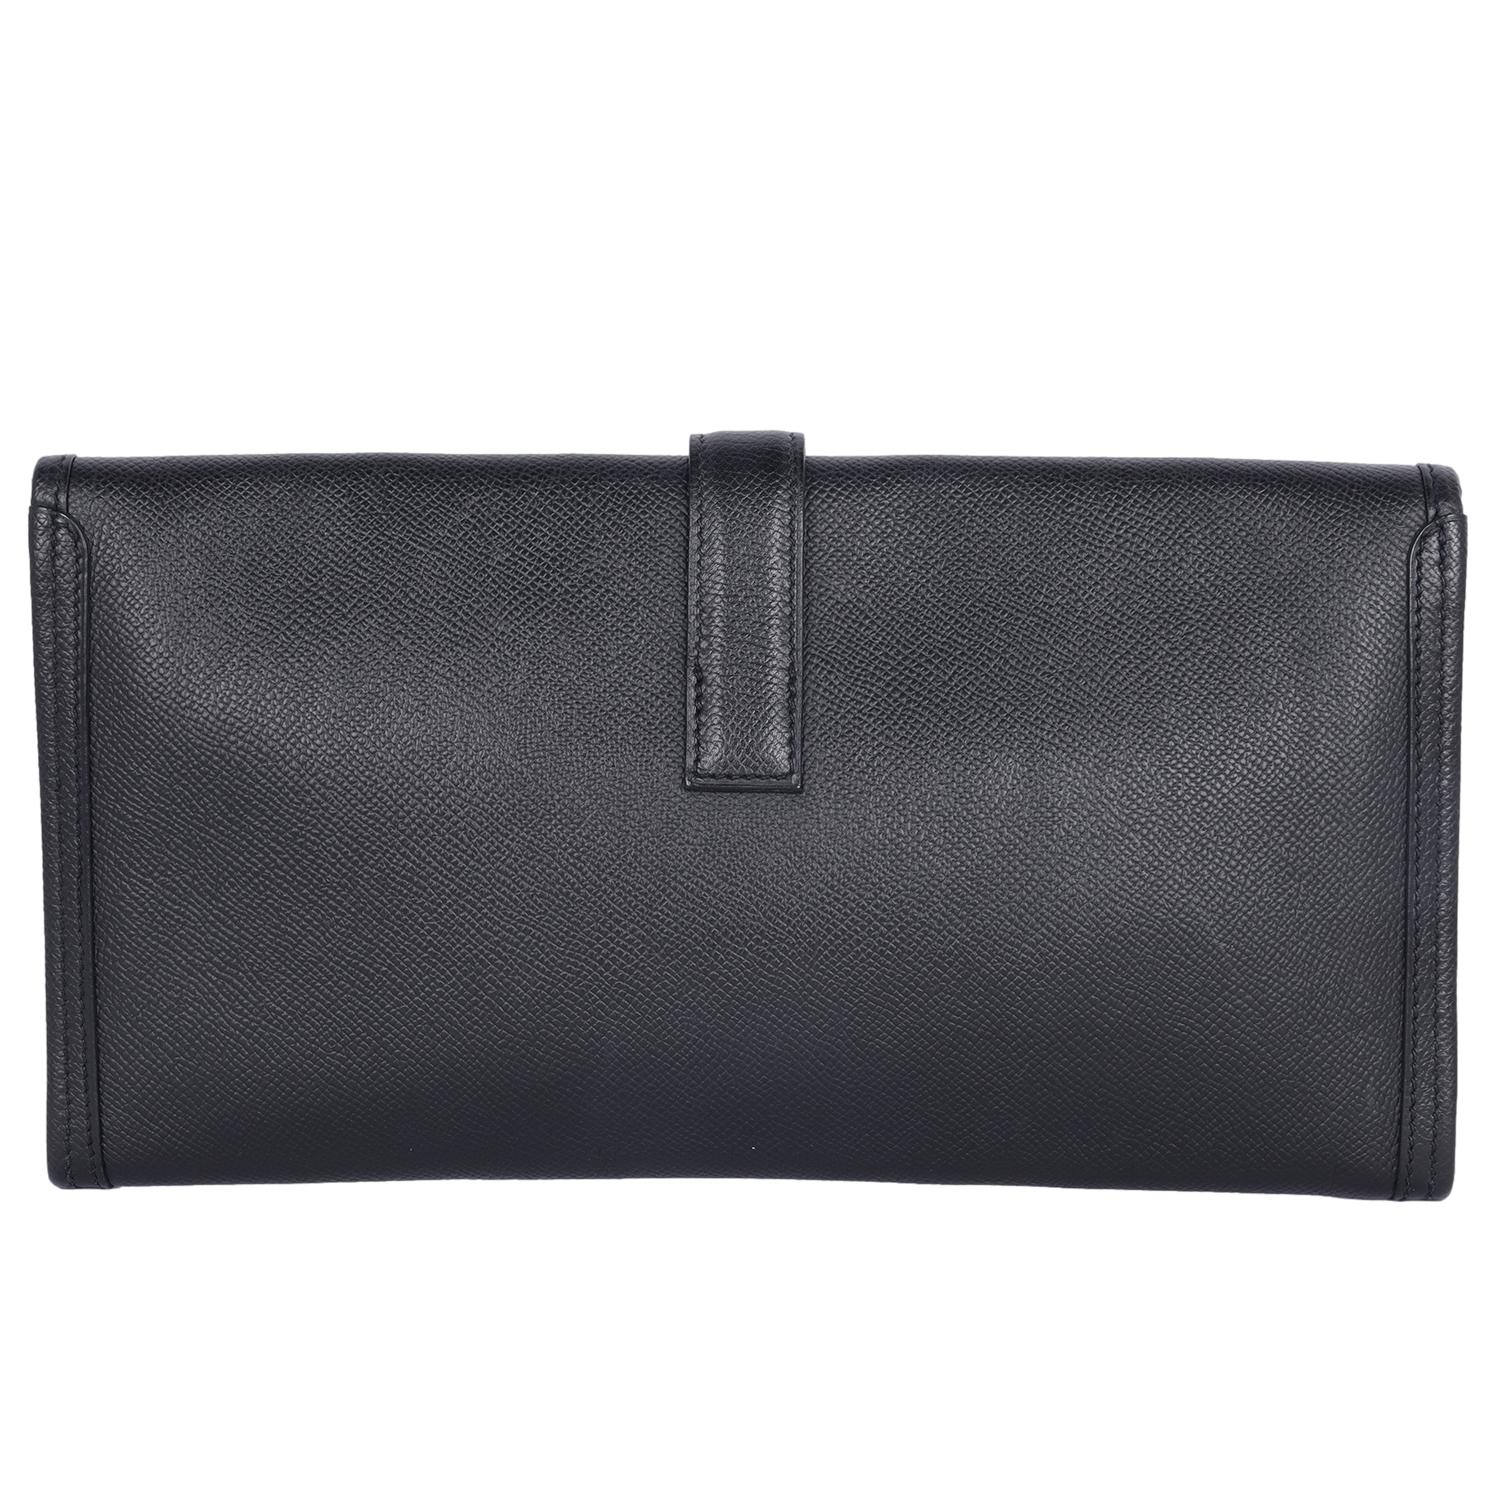 Hermes Black Leather Swift Jige Elan 29 Evening Bag Clutch For Sale 1